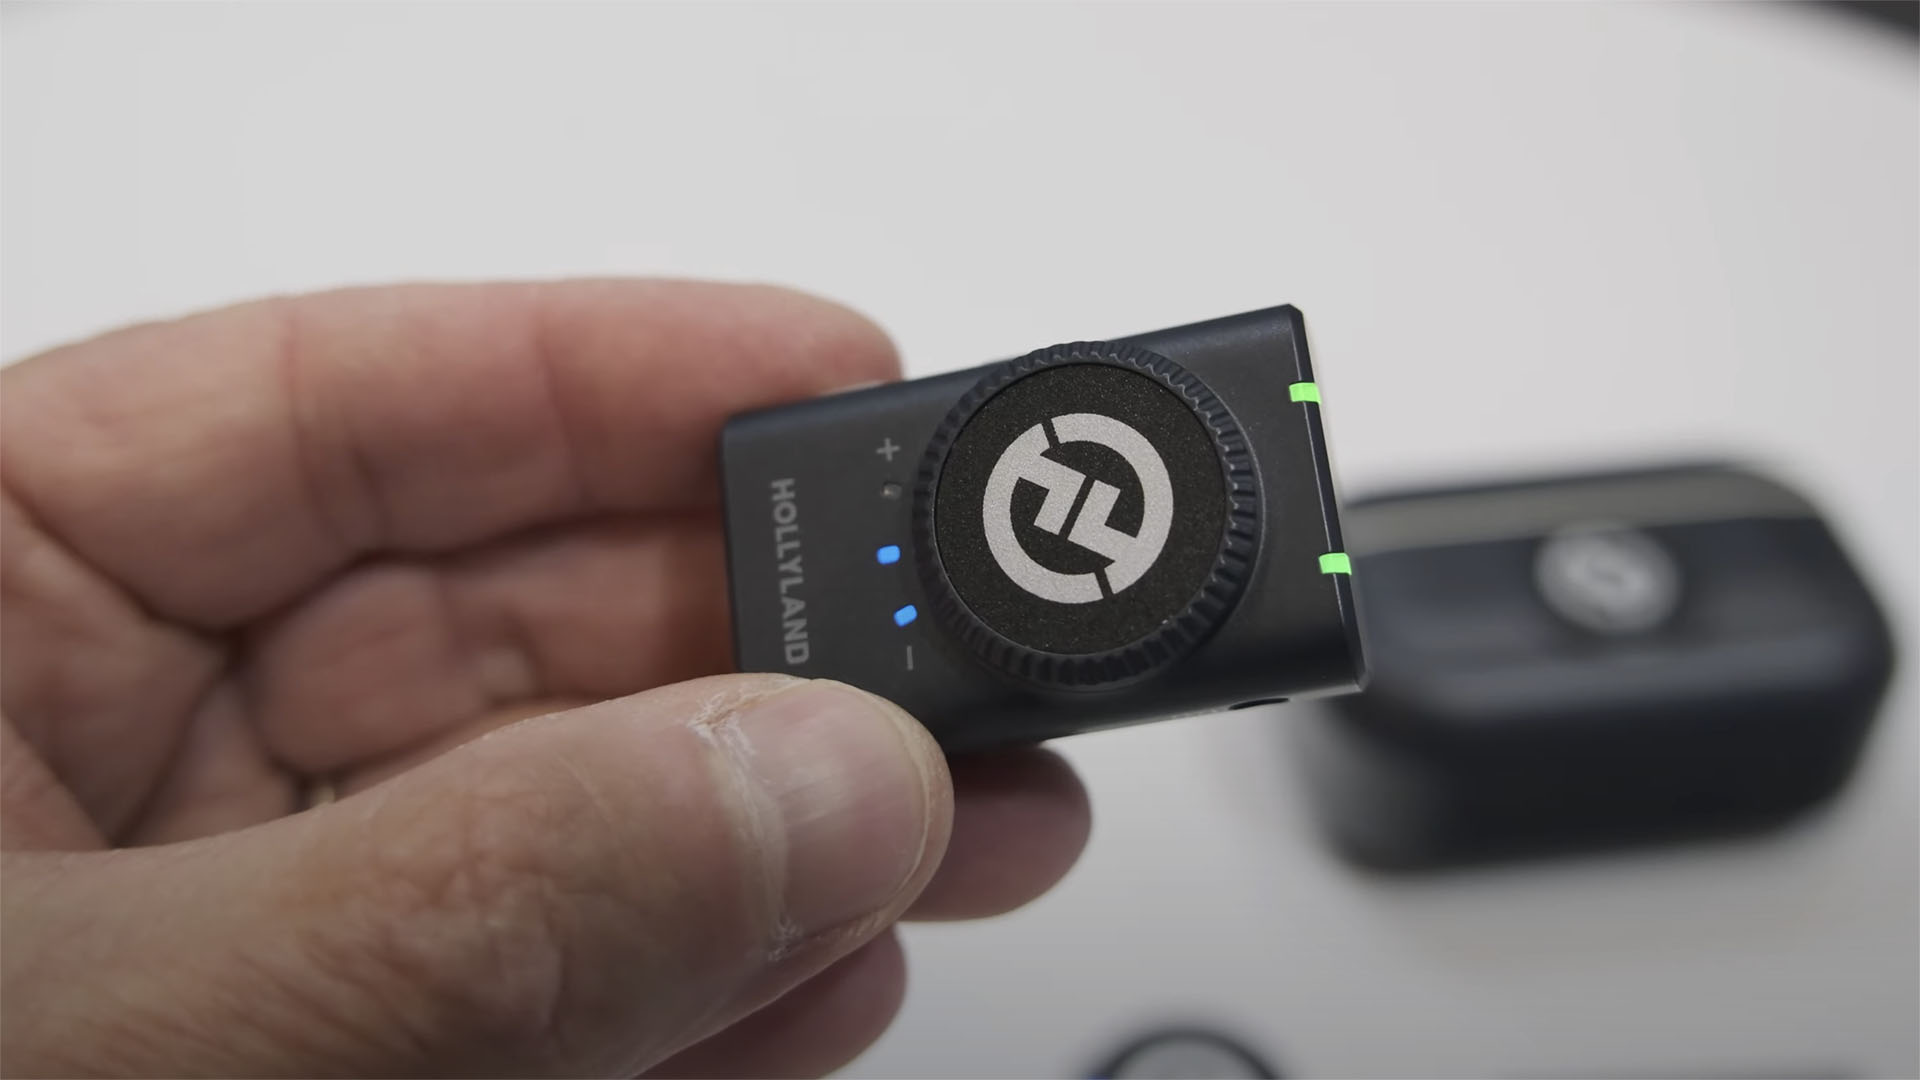 HollylandがLARK M2を発表 - ボタンサイズのデュアルマイクワイヤレス ...